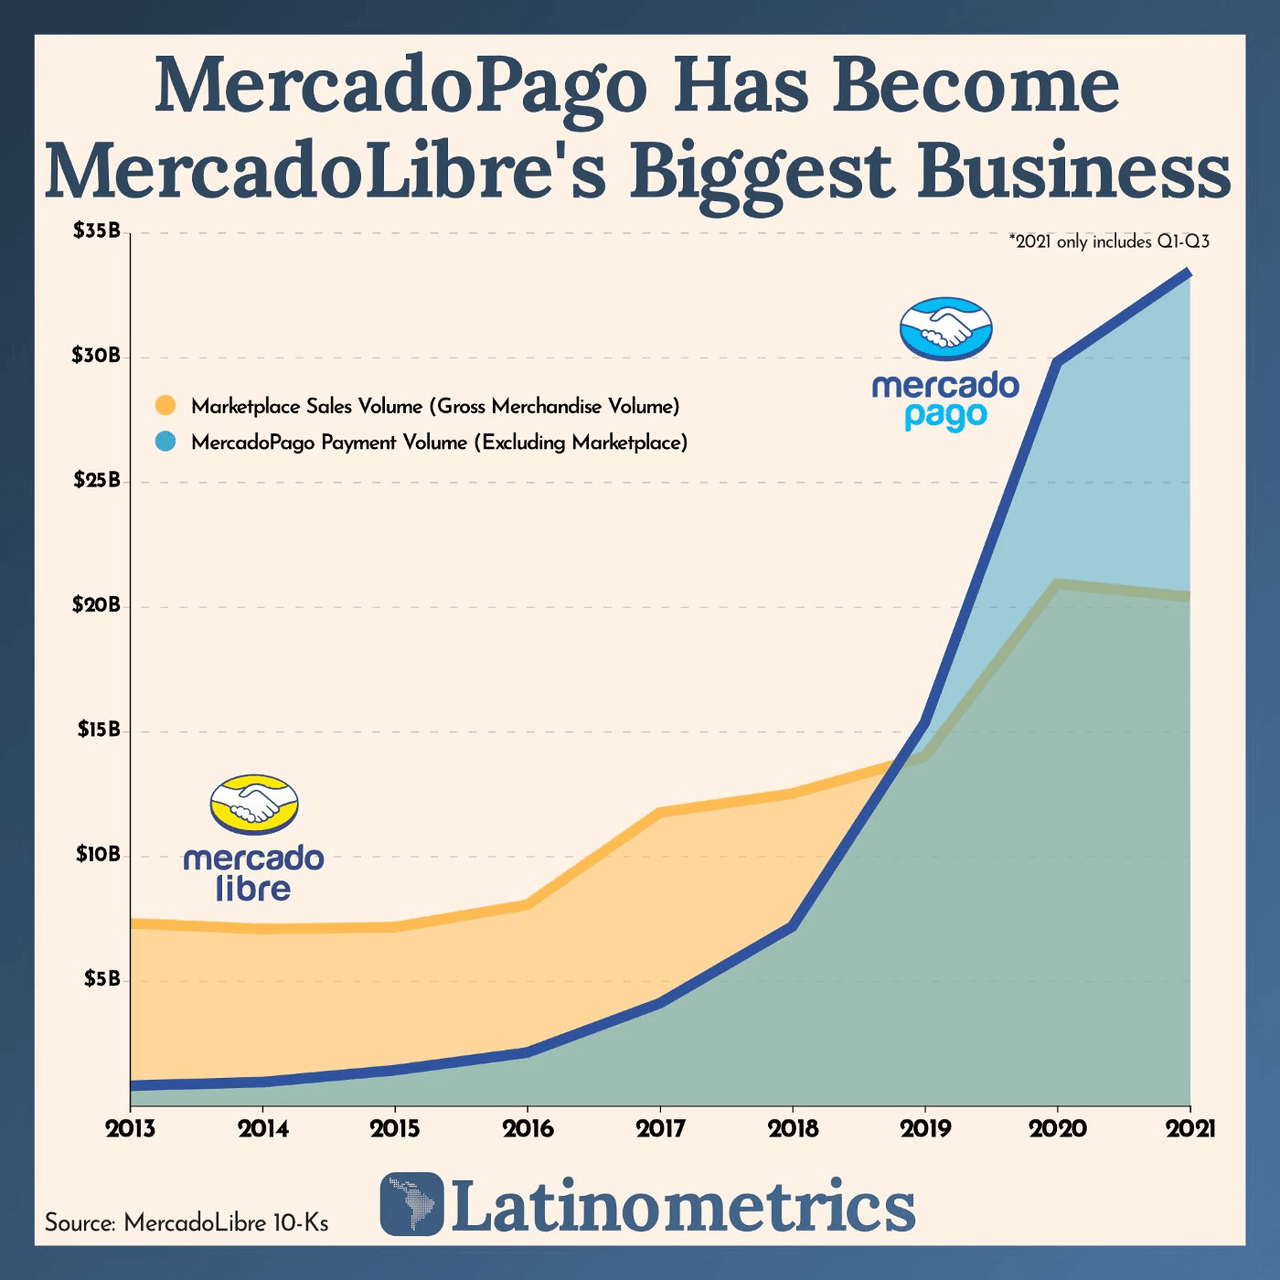 Mercado Pago Growth Trajectory